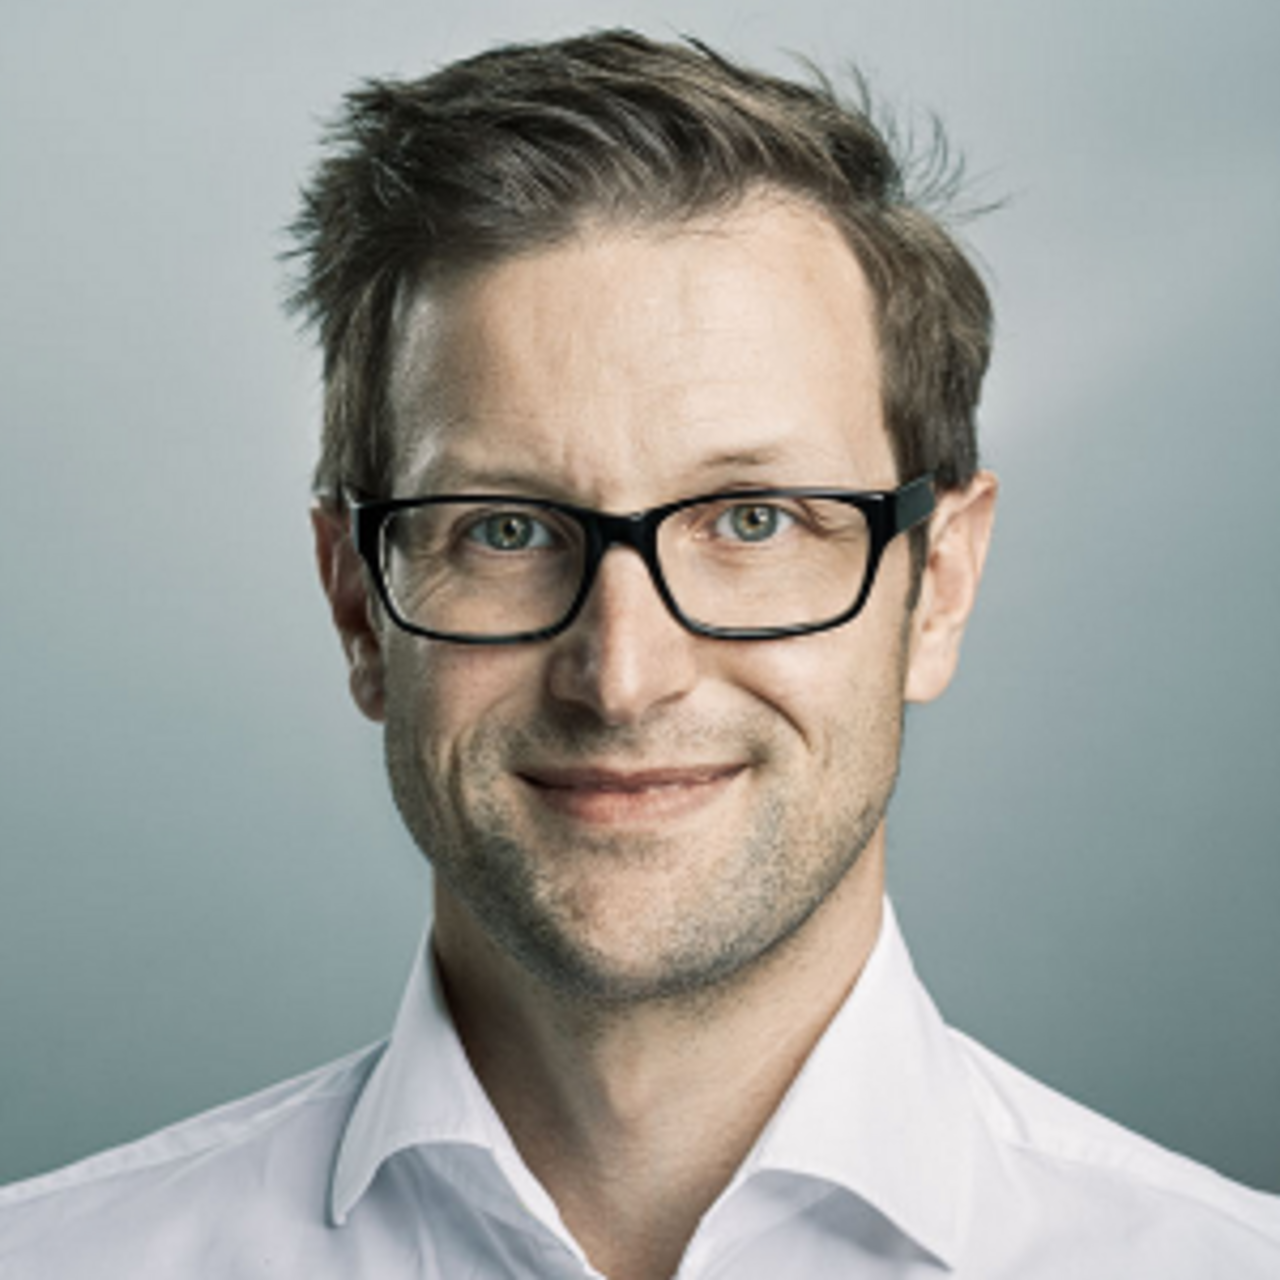 PD Dr Andreas Ficklscherer - Portrait